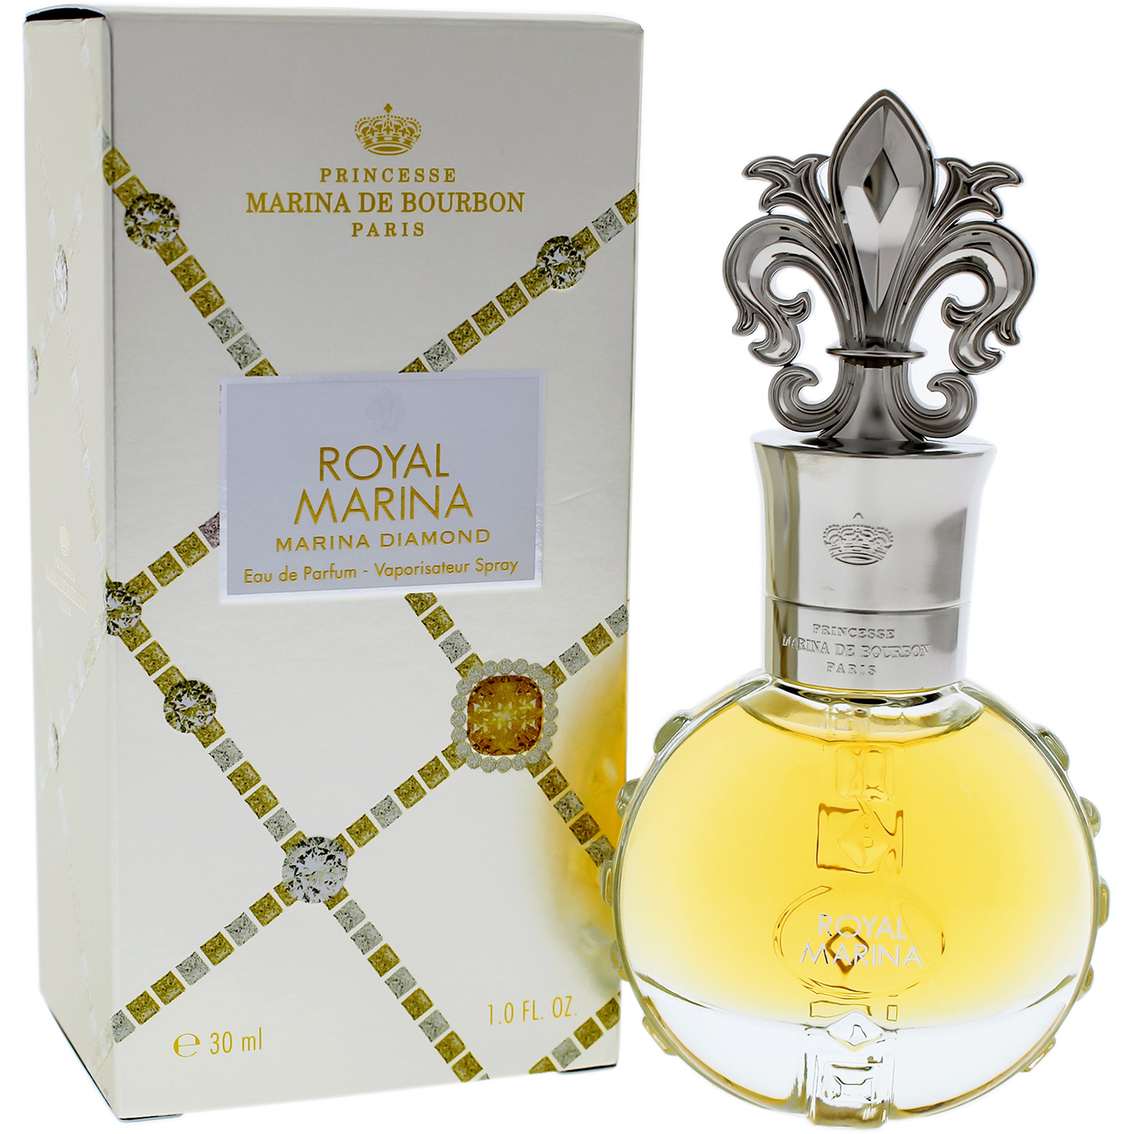 Princesse Marina De Bourbon Royal Marina Diamond Eau de Parfum Spray - Image 2 of 2